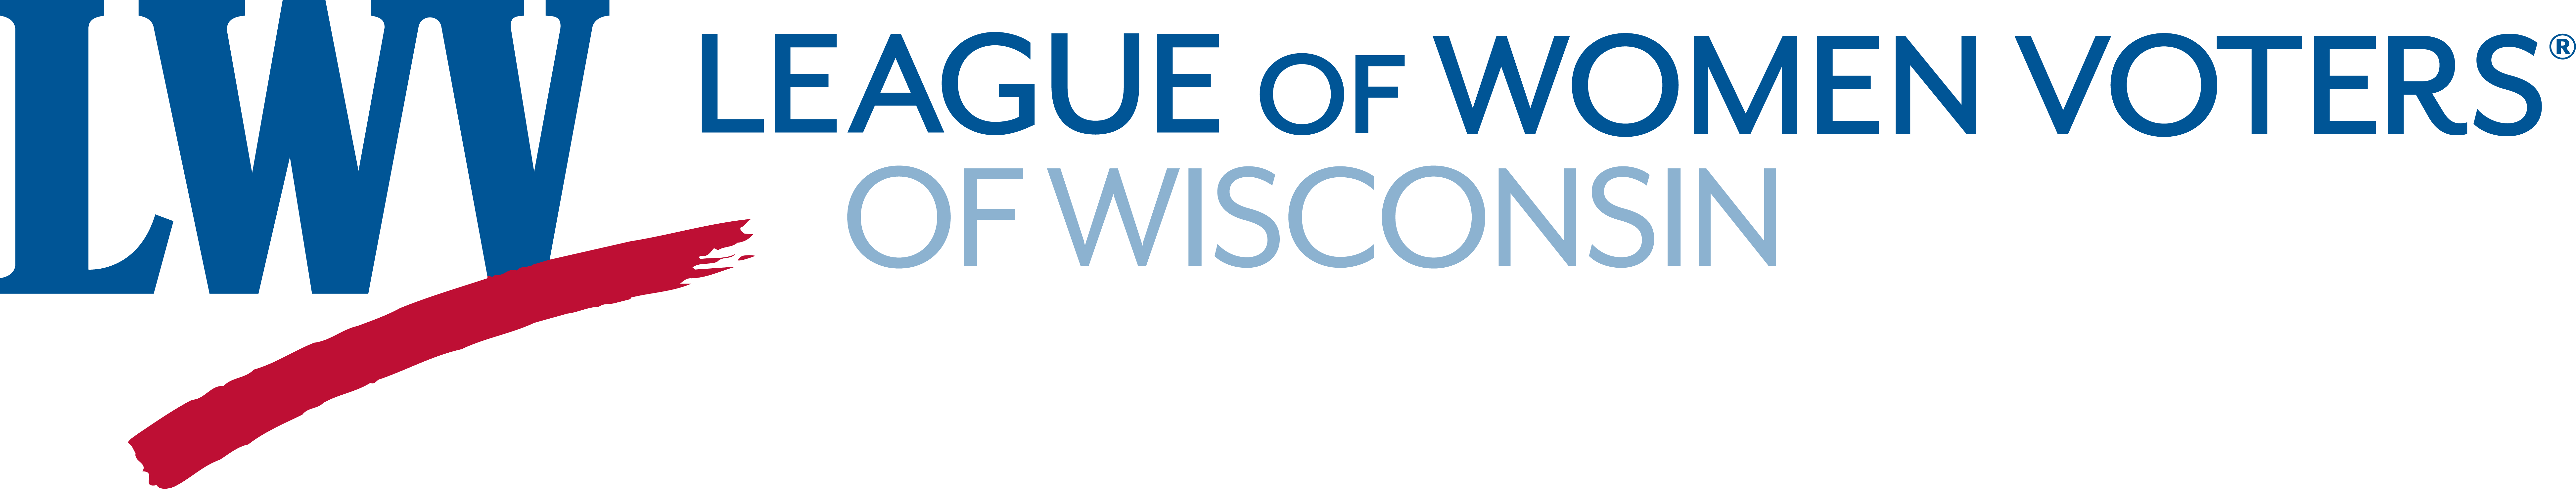 League of Women Voters of Wisconsin